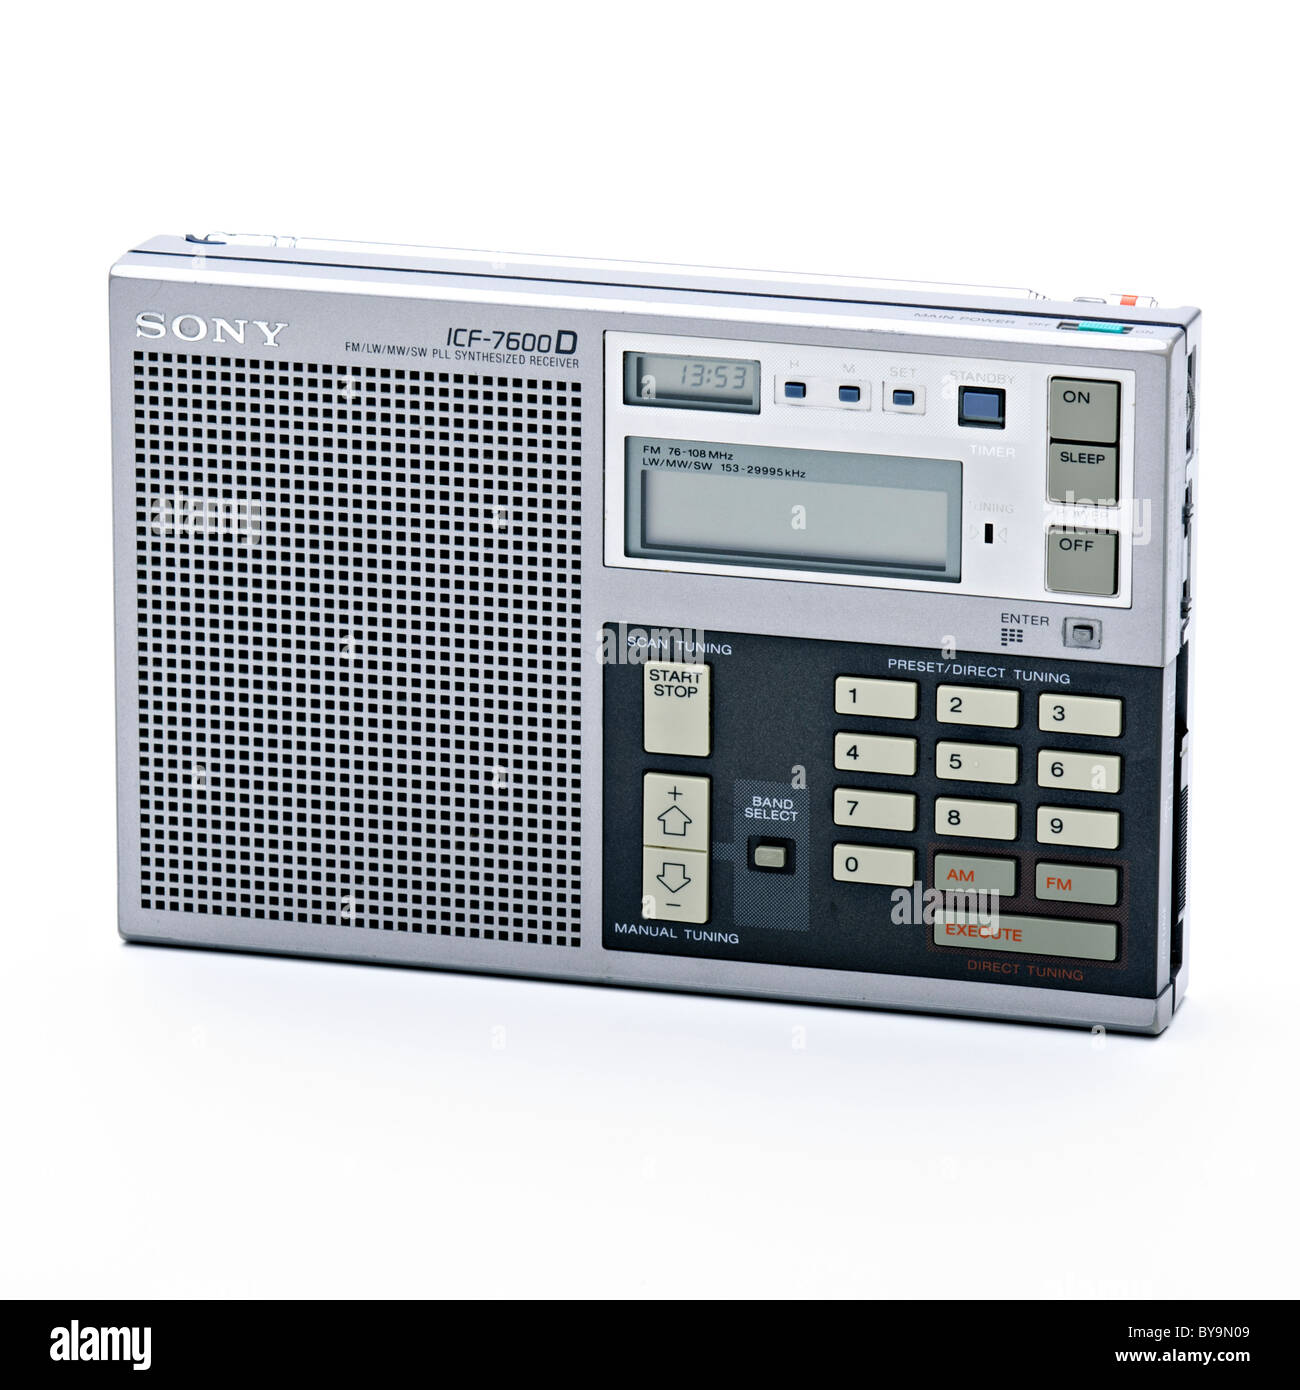 1984 1987 radio Sony ICF-7600D Stock Photo